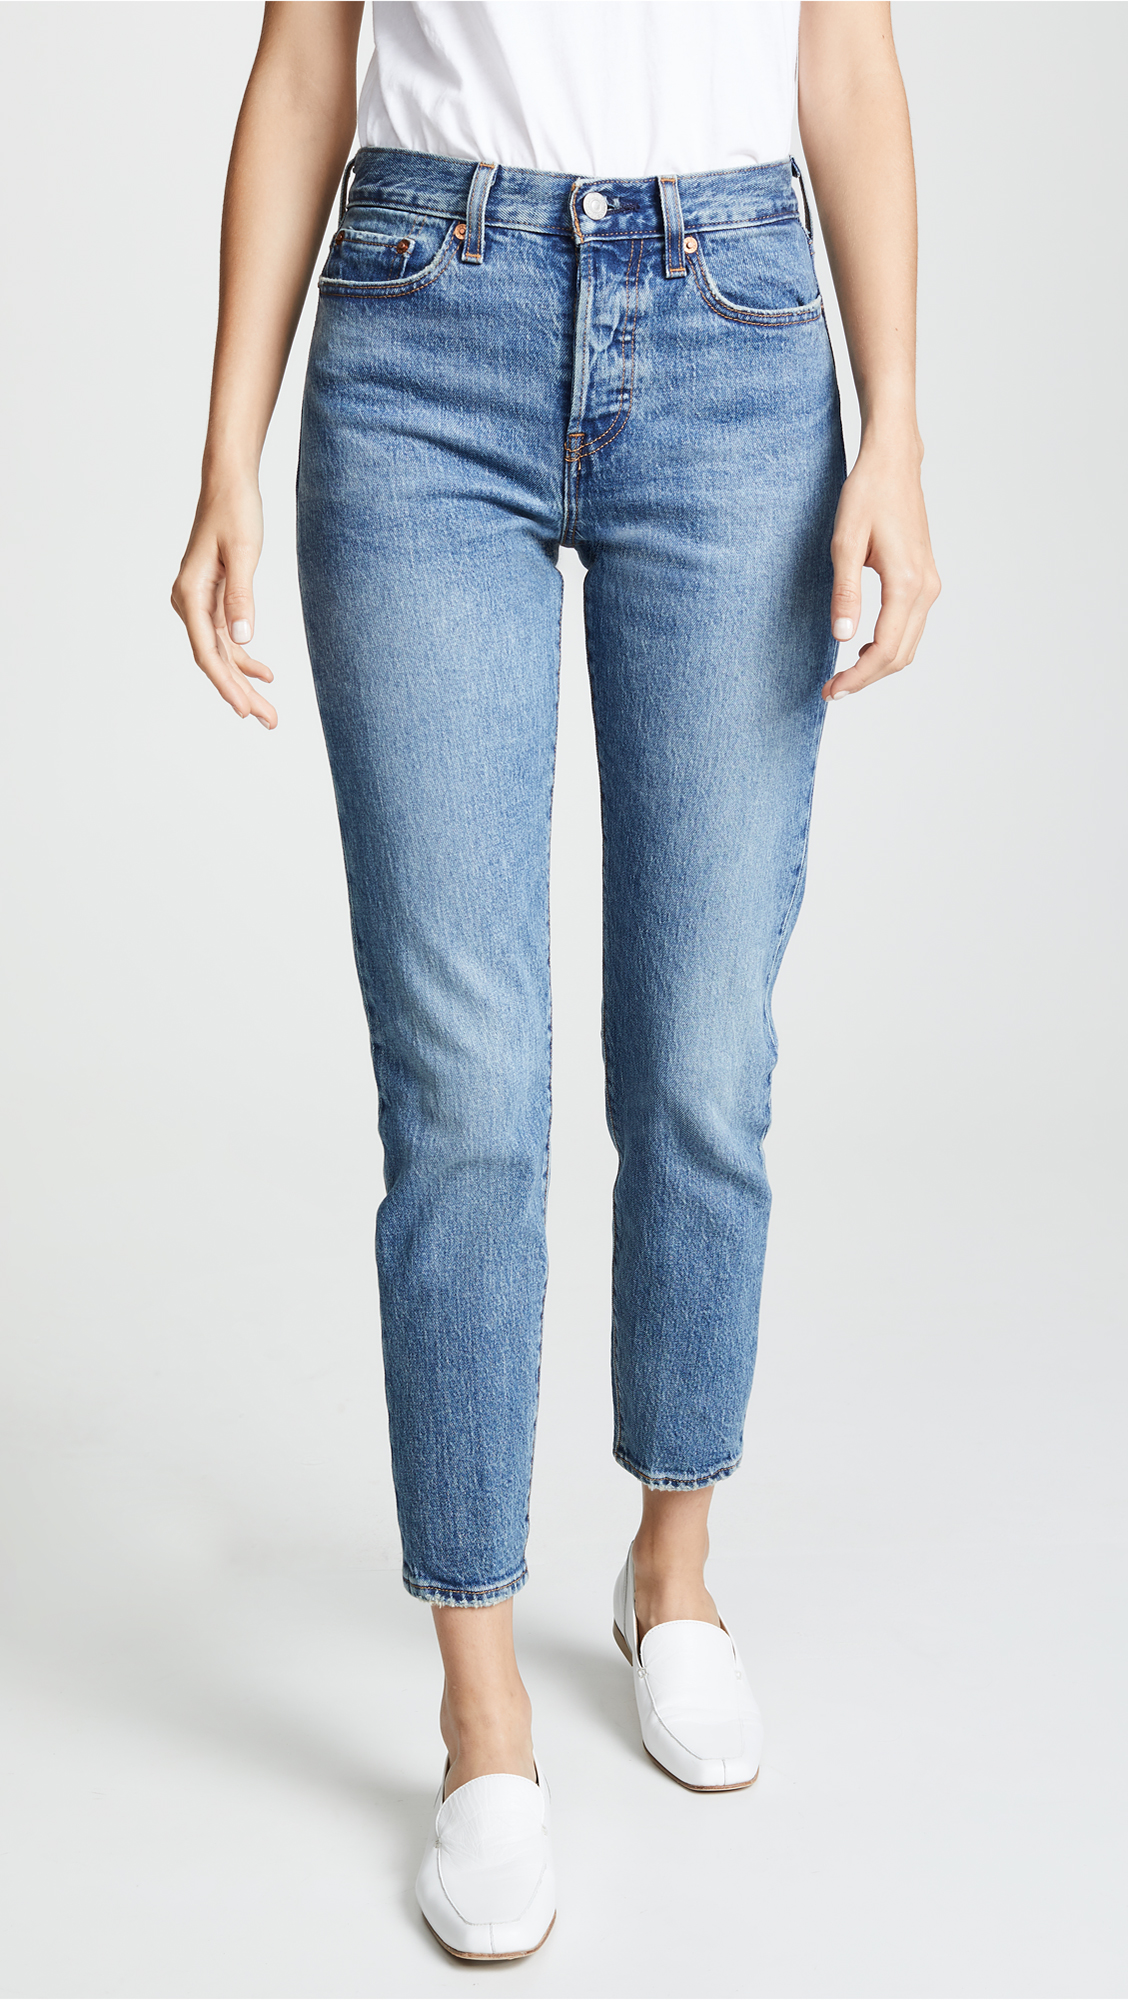 levis jeans woman